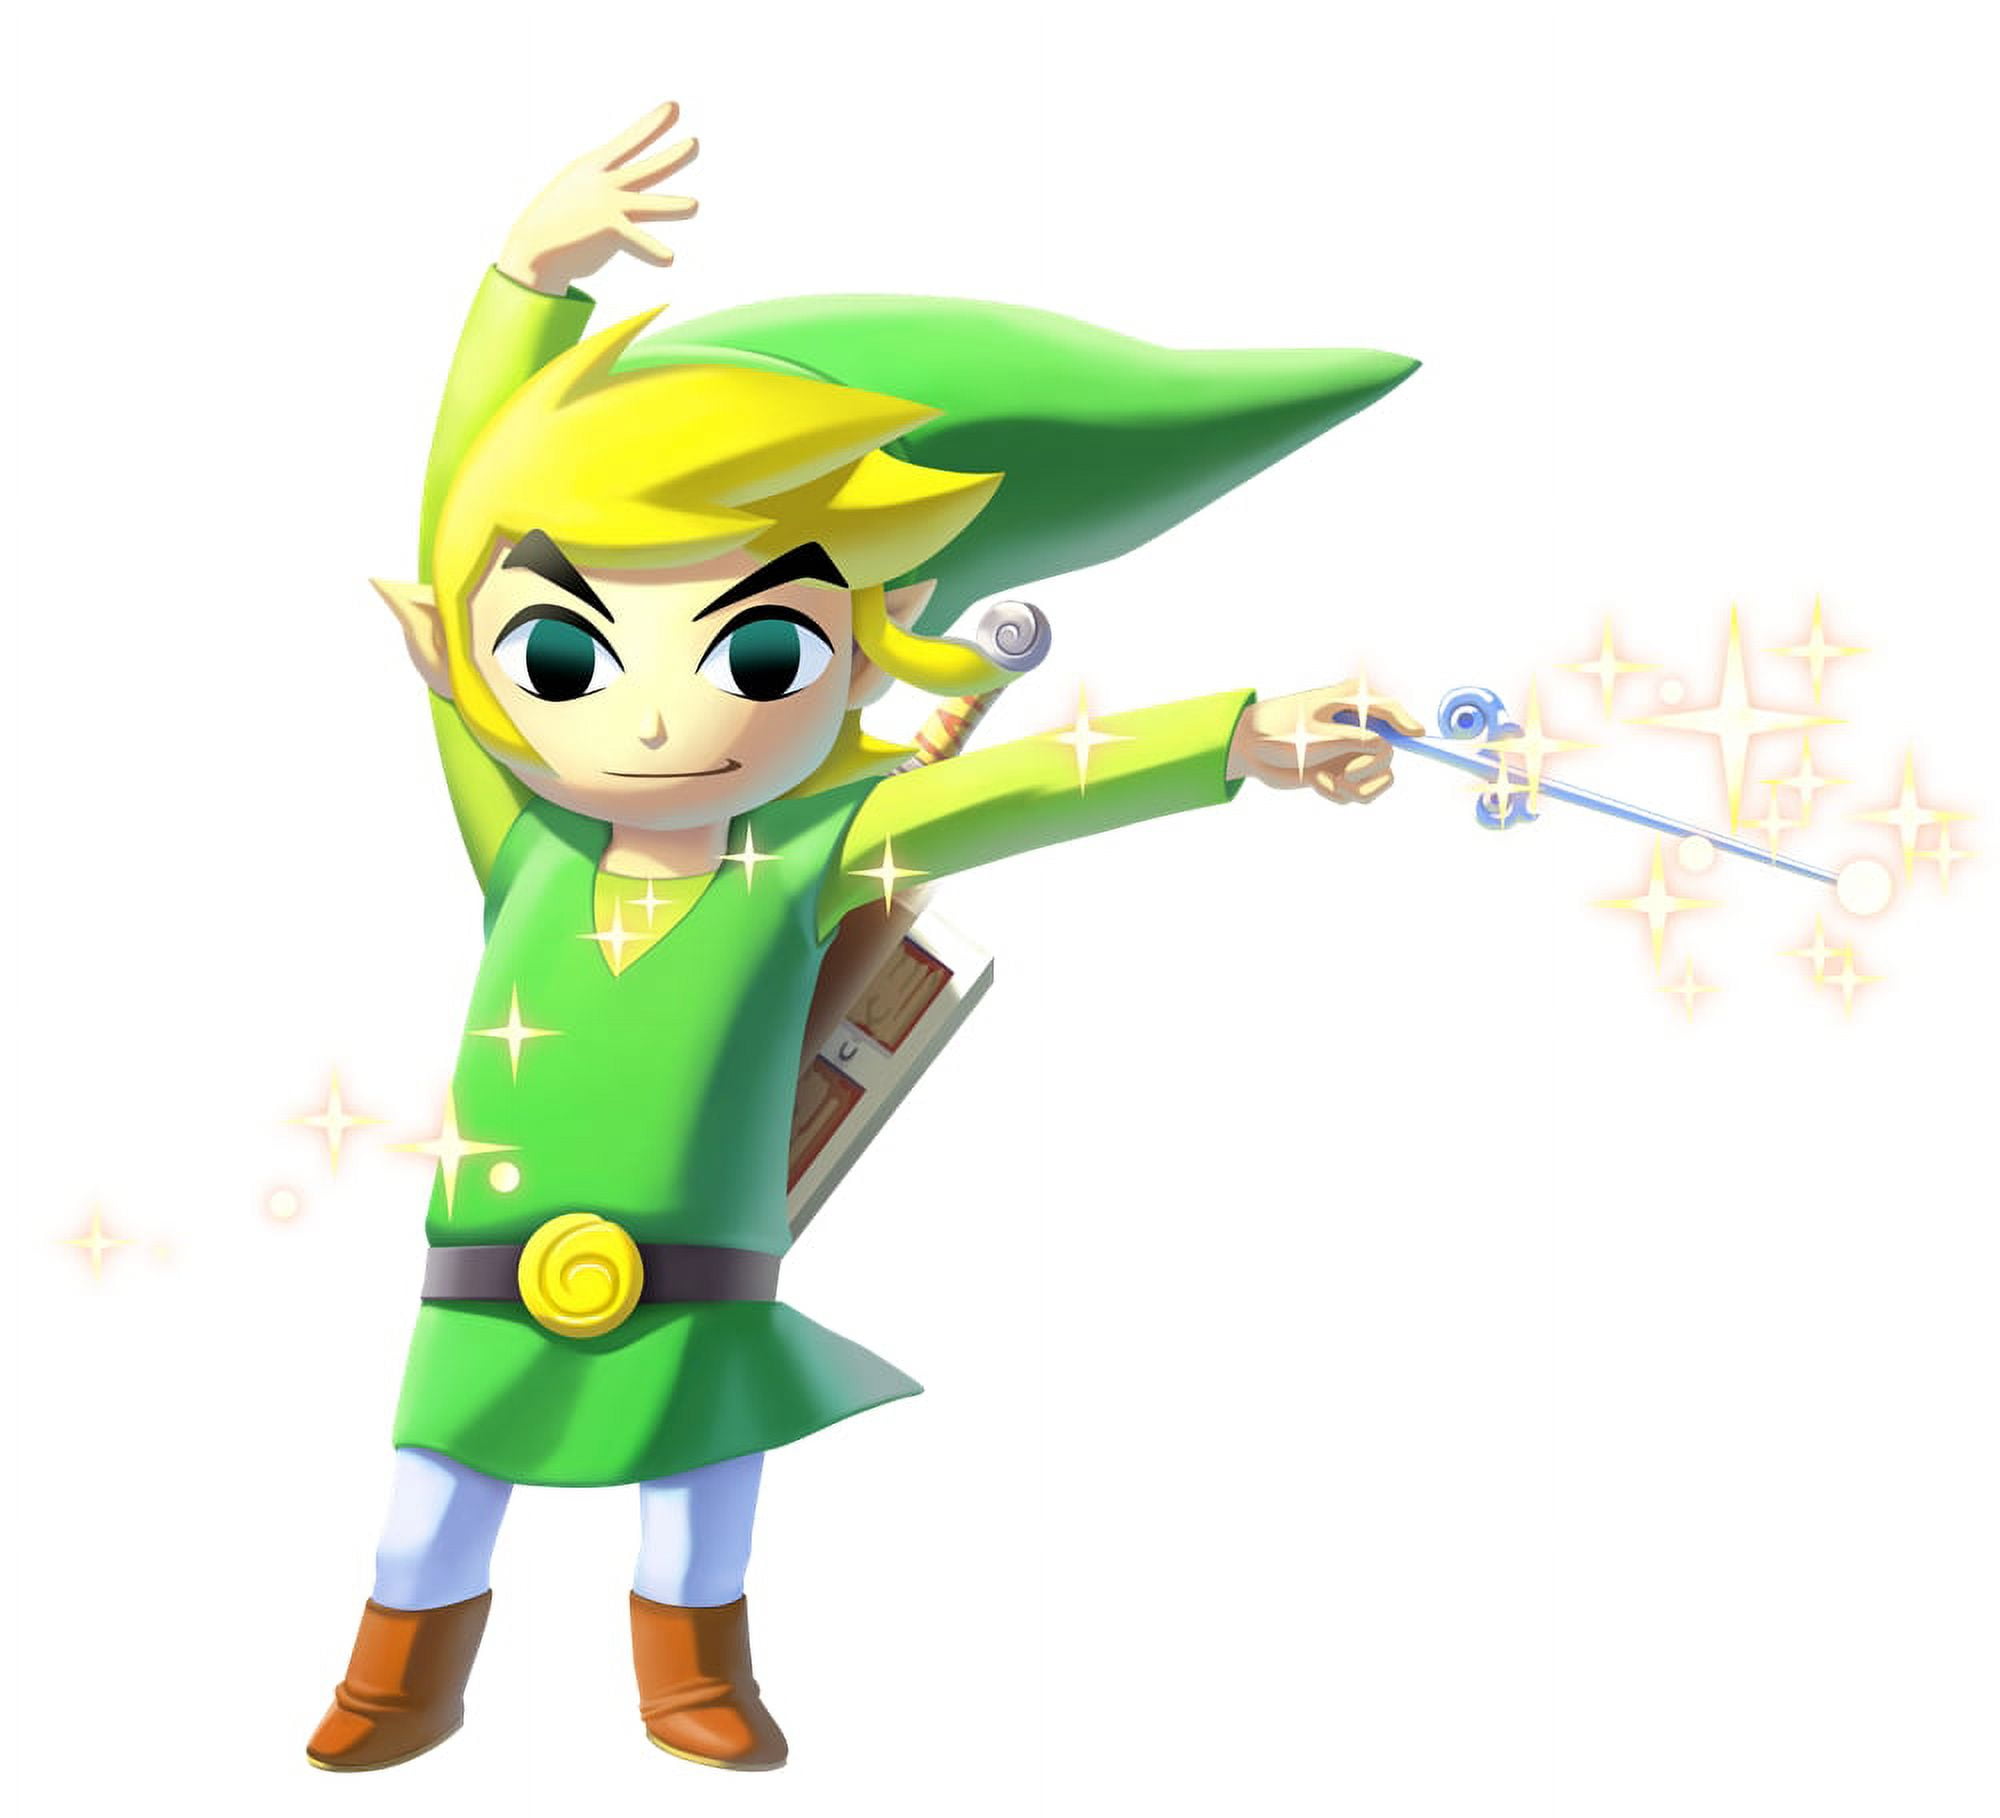 Nintendo Amiibo Toon Link 2-Pack Figure The Legend of Zelda Wind Waker  Switch US